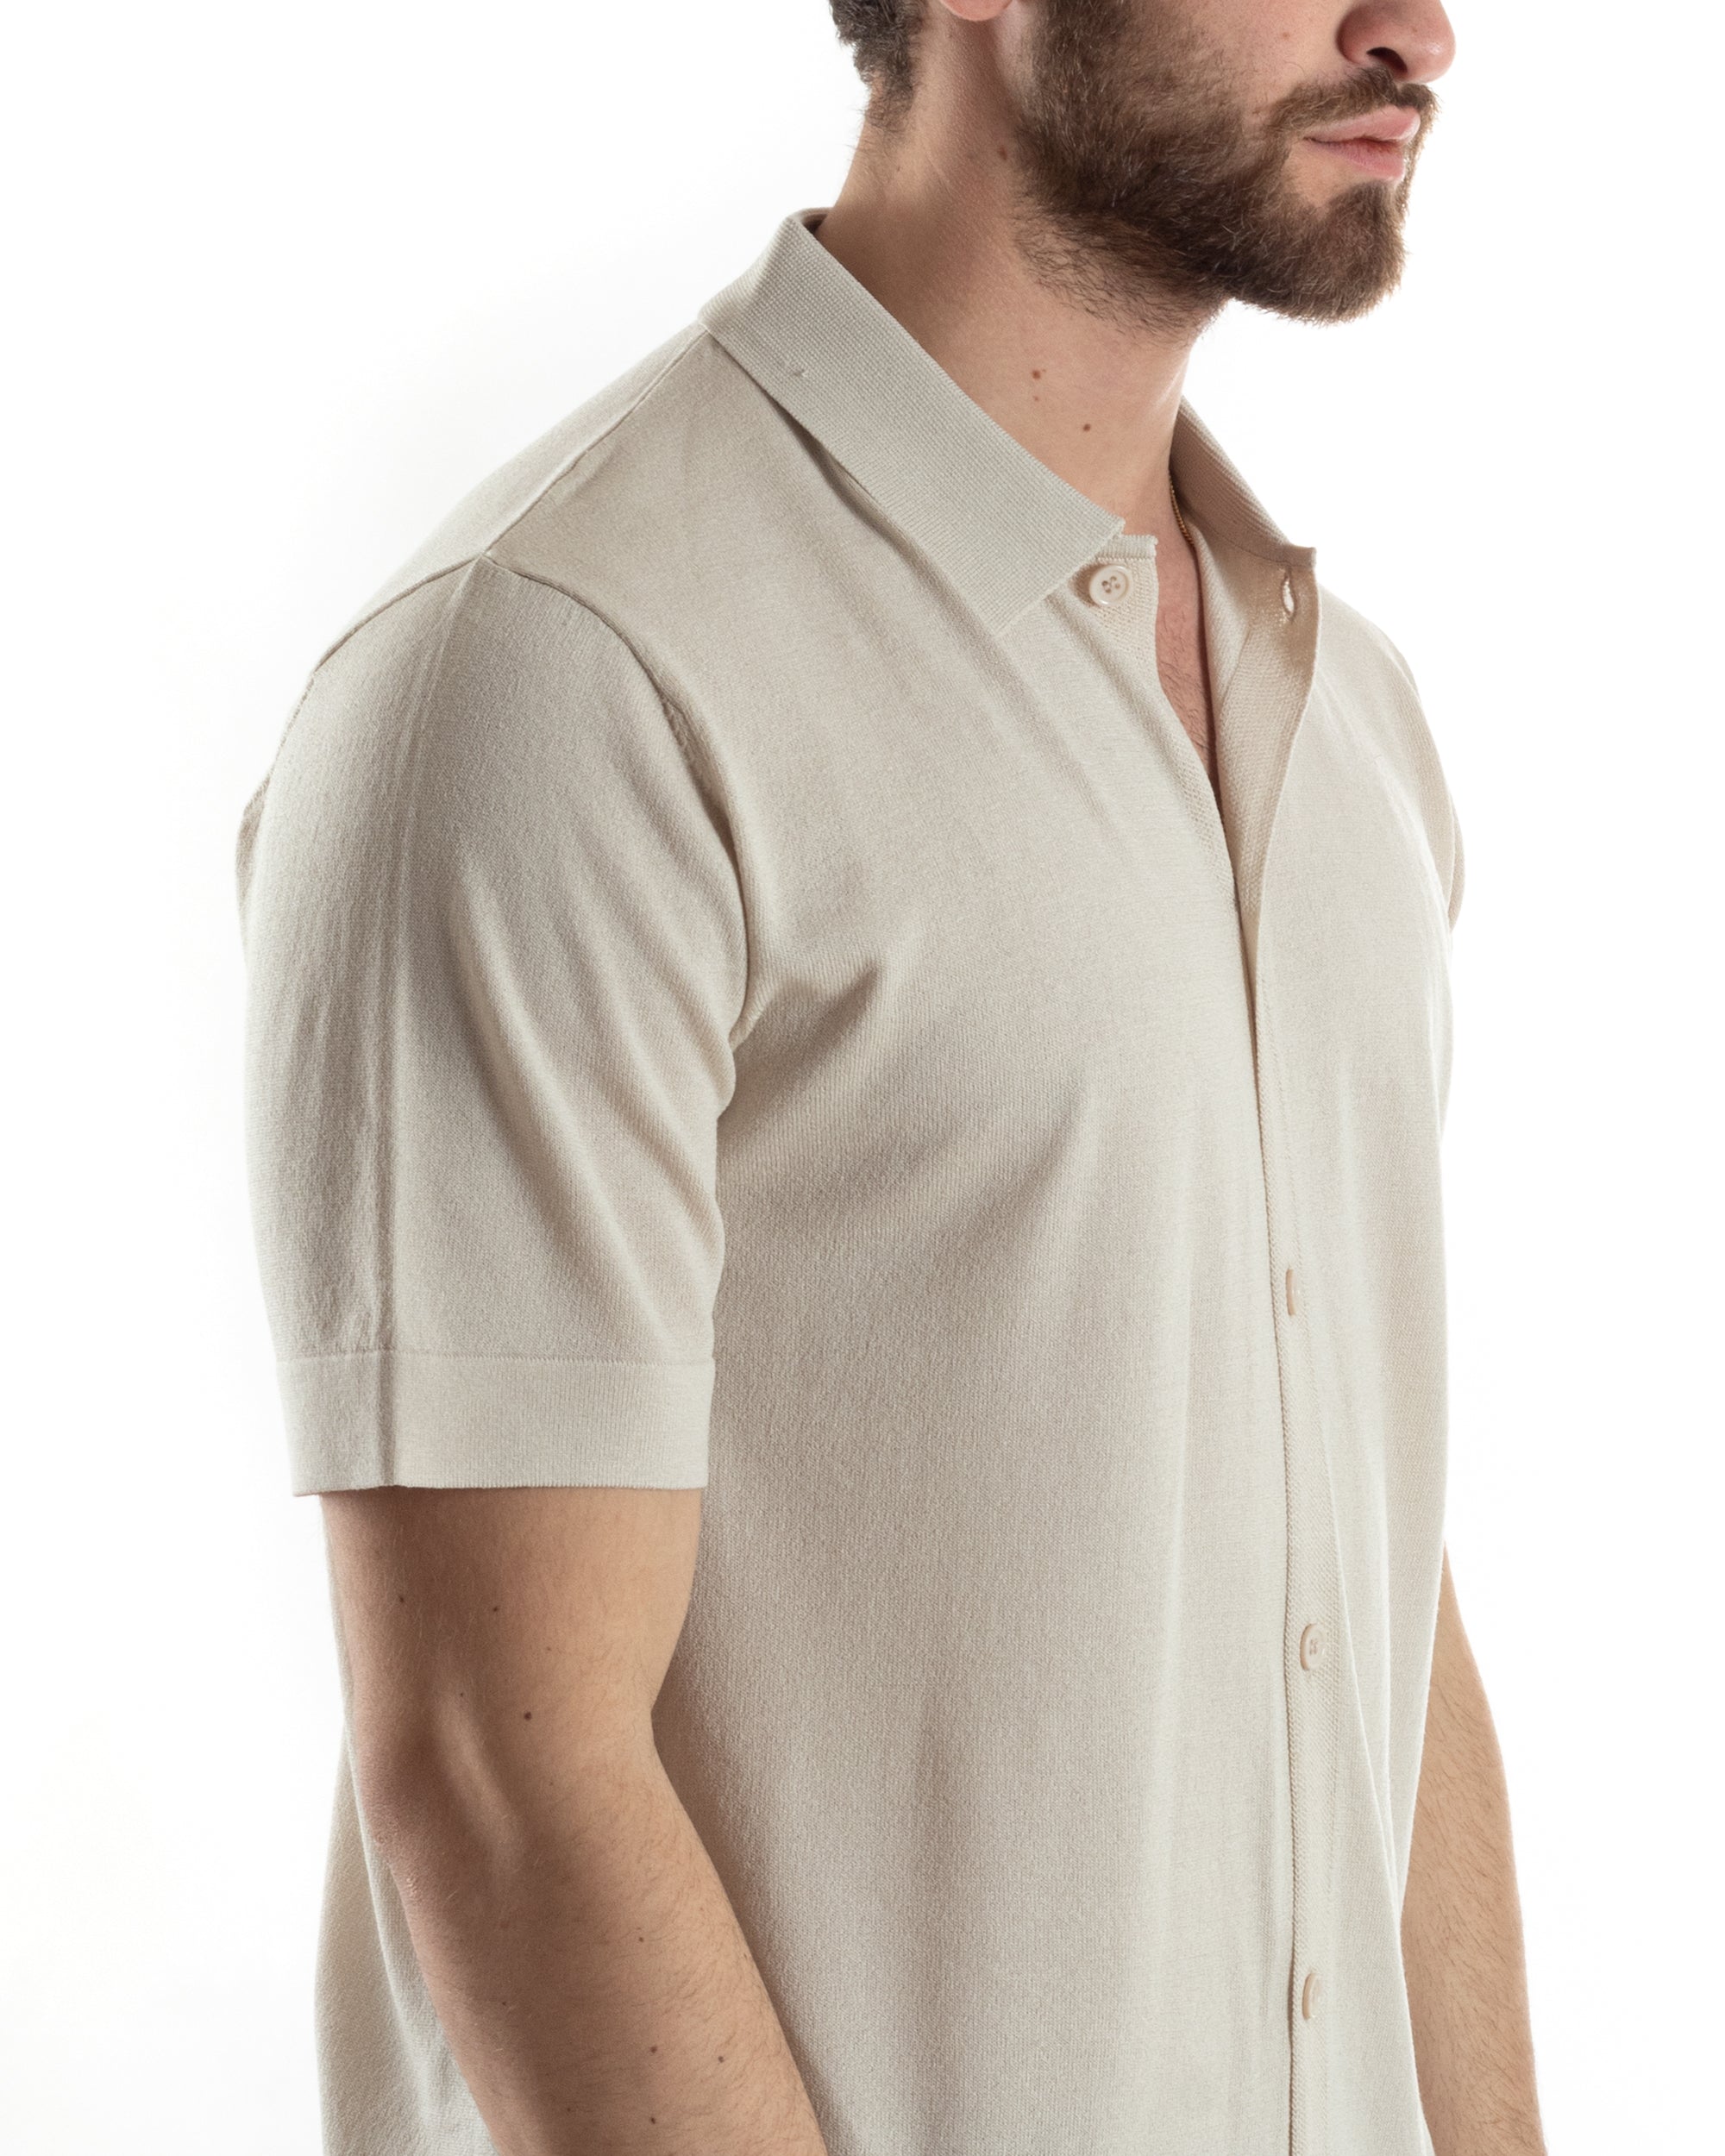 Polo Filo Uomo Cardigan Bottoni T-Shirt Con Colletto Beige Casual GIOSAL-TS3019A